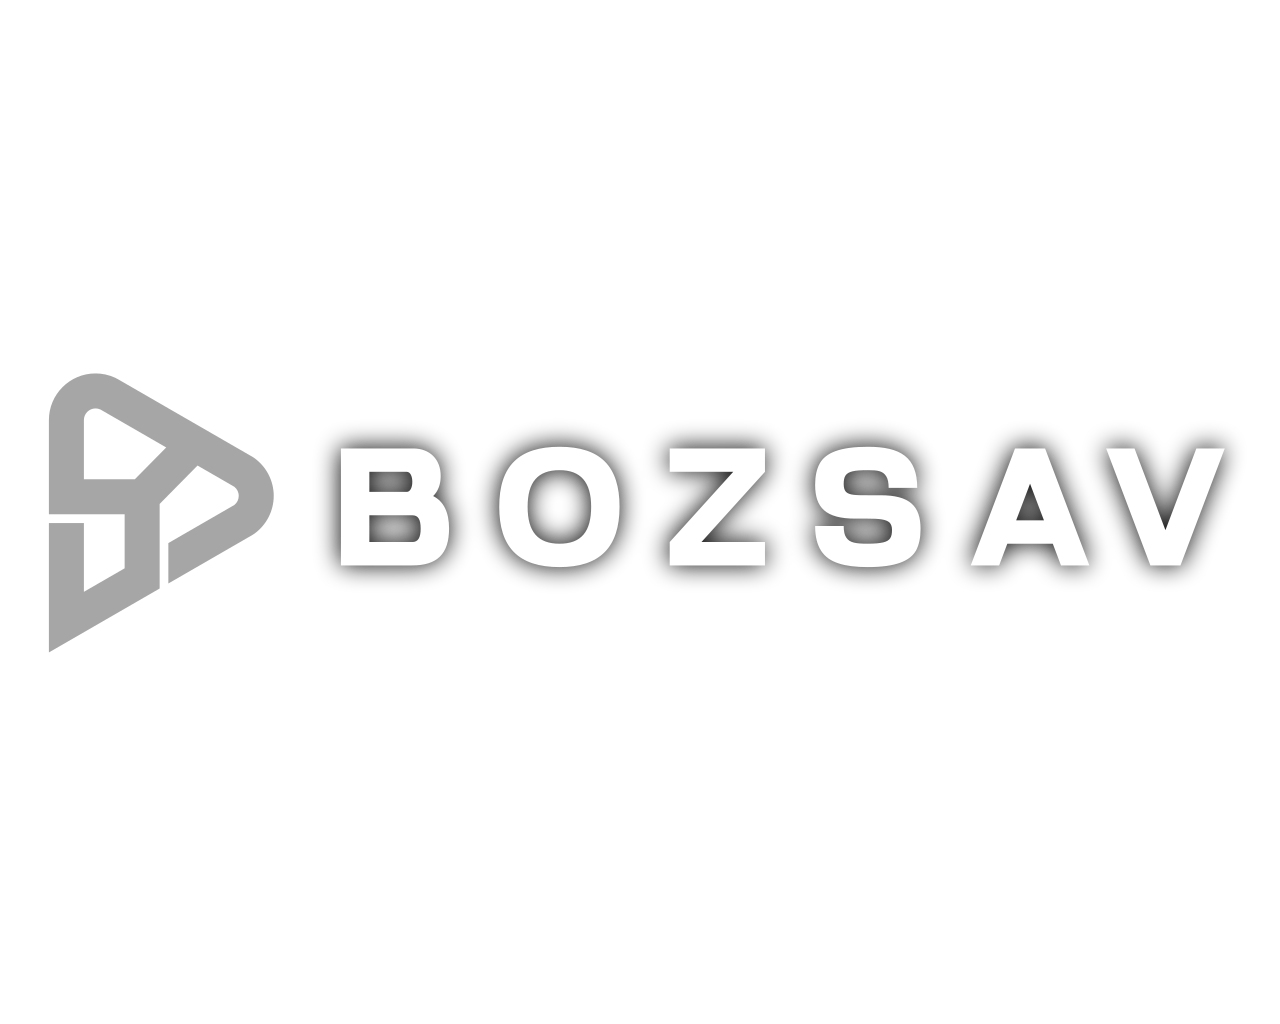 BOZSAV Logosu